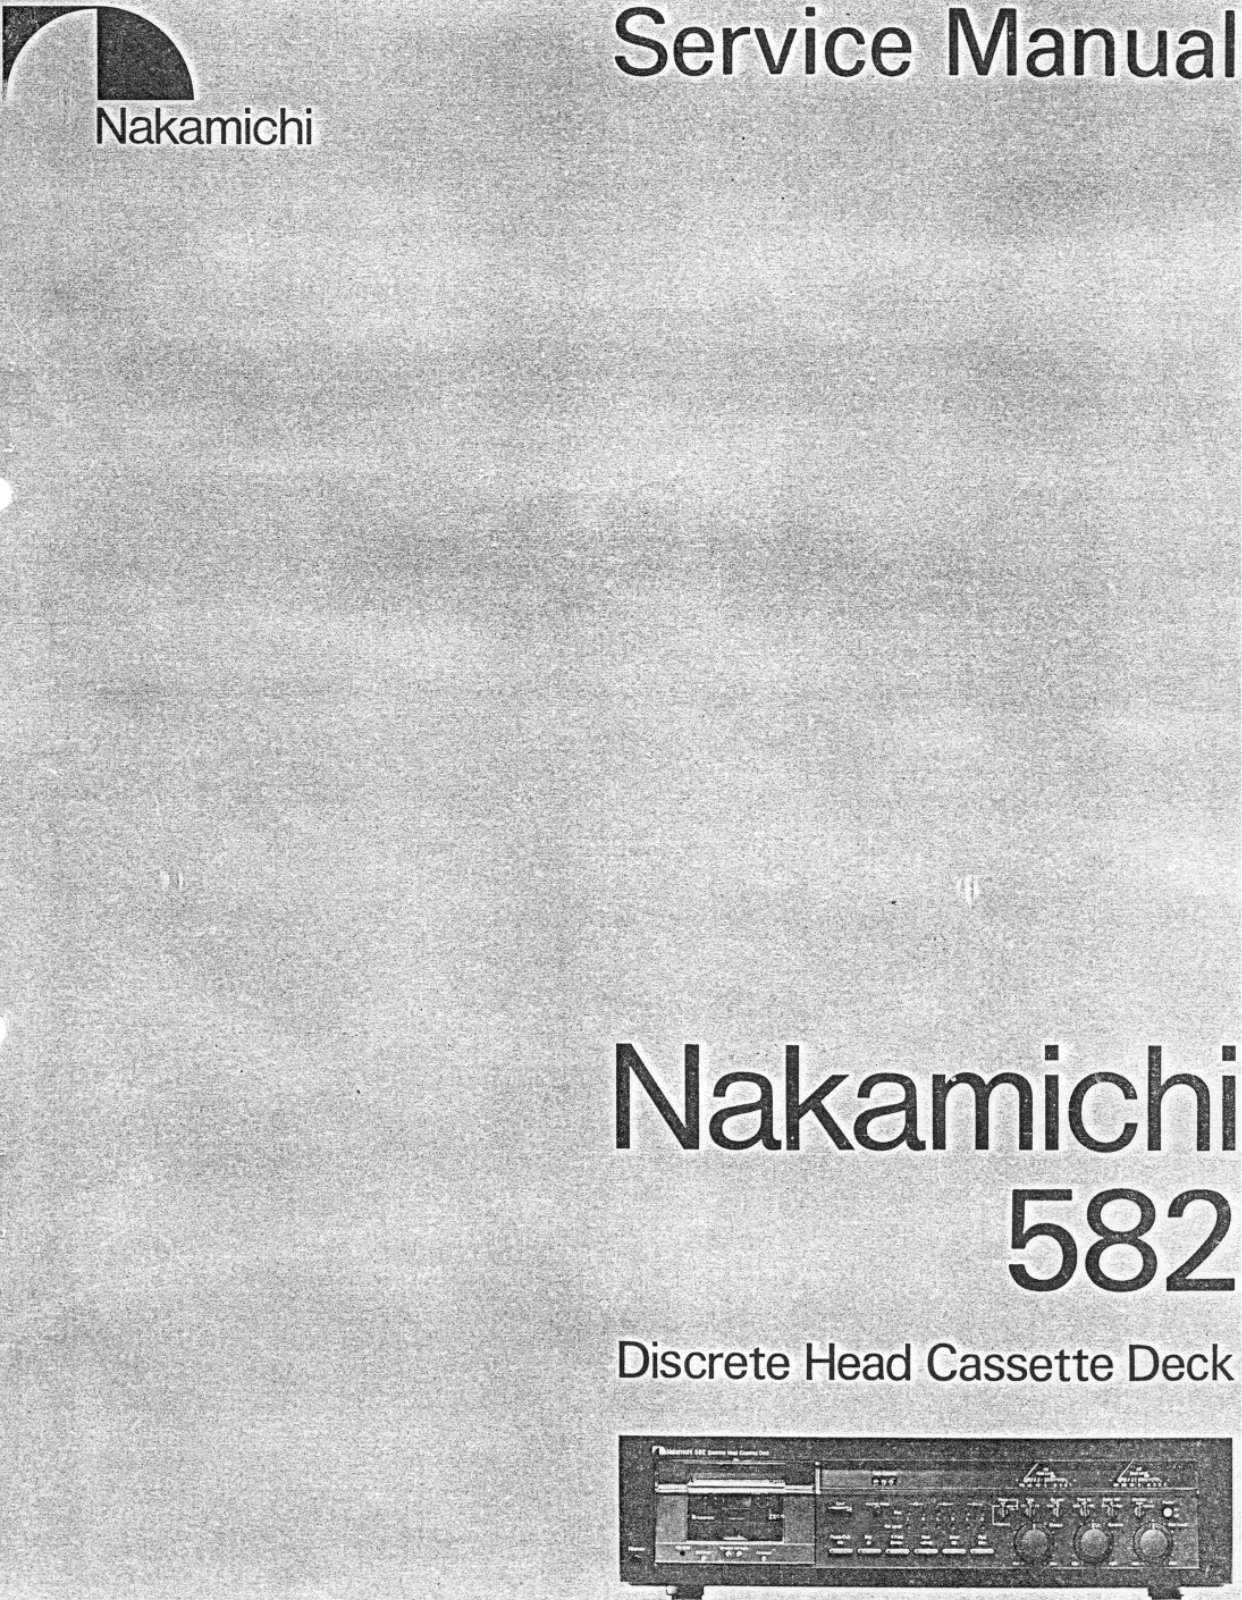 Nakamichi 582 SERVICE MANUAL